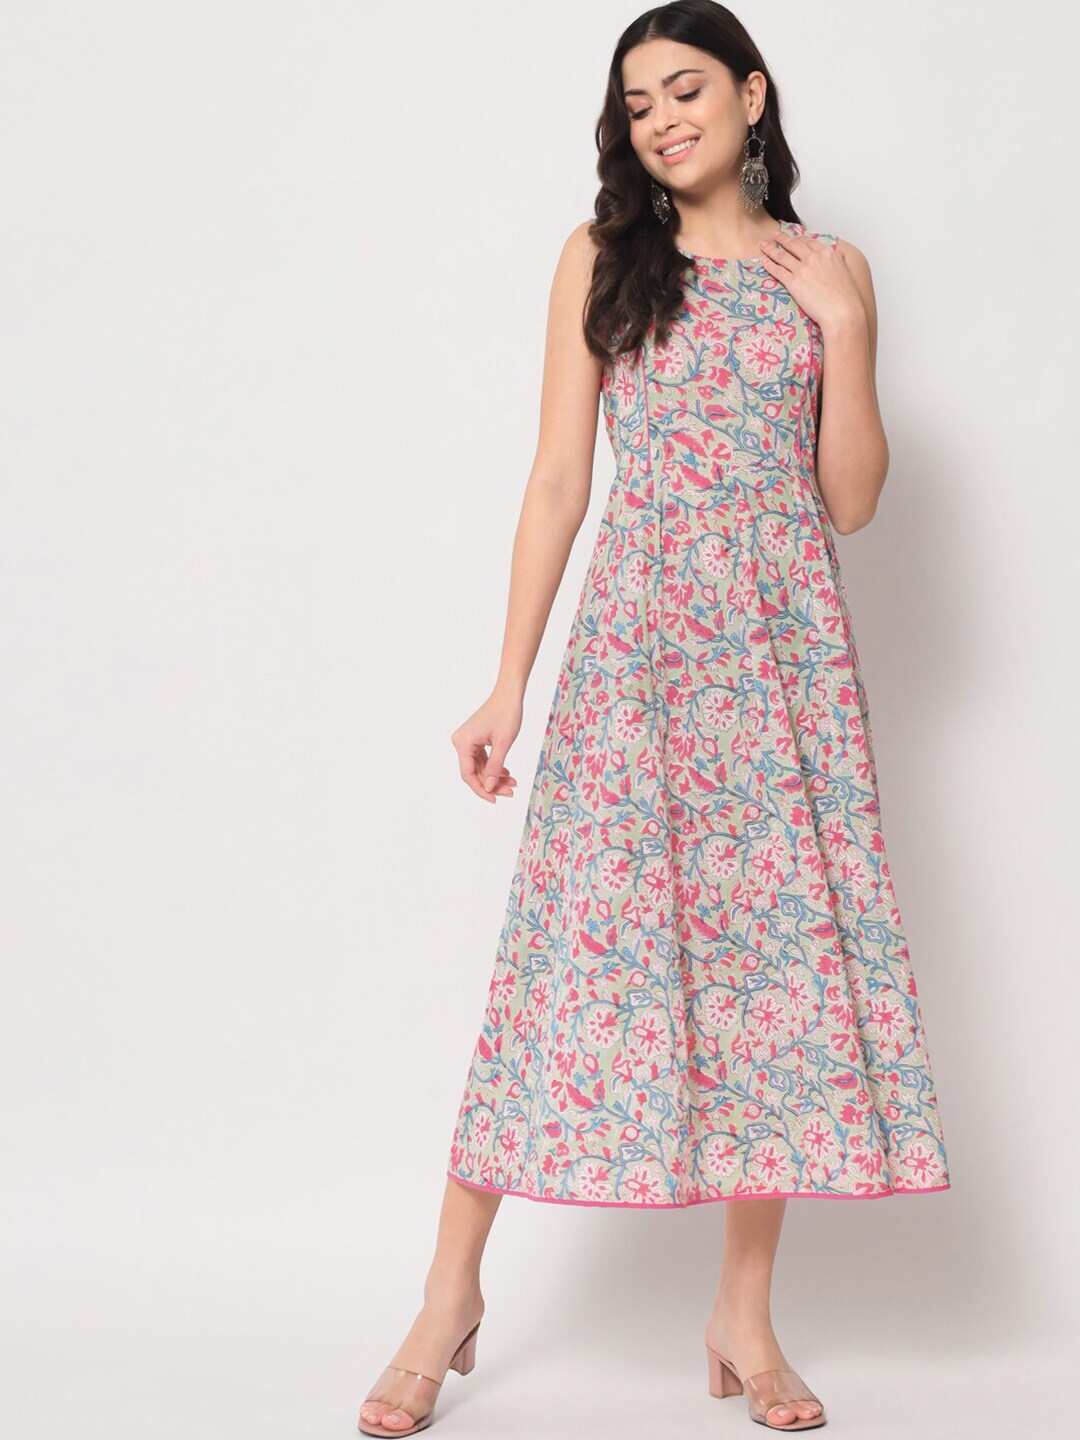 Sutidora Floral Cotton Midi Dress Price in India